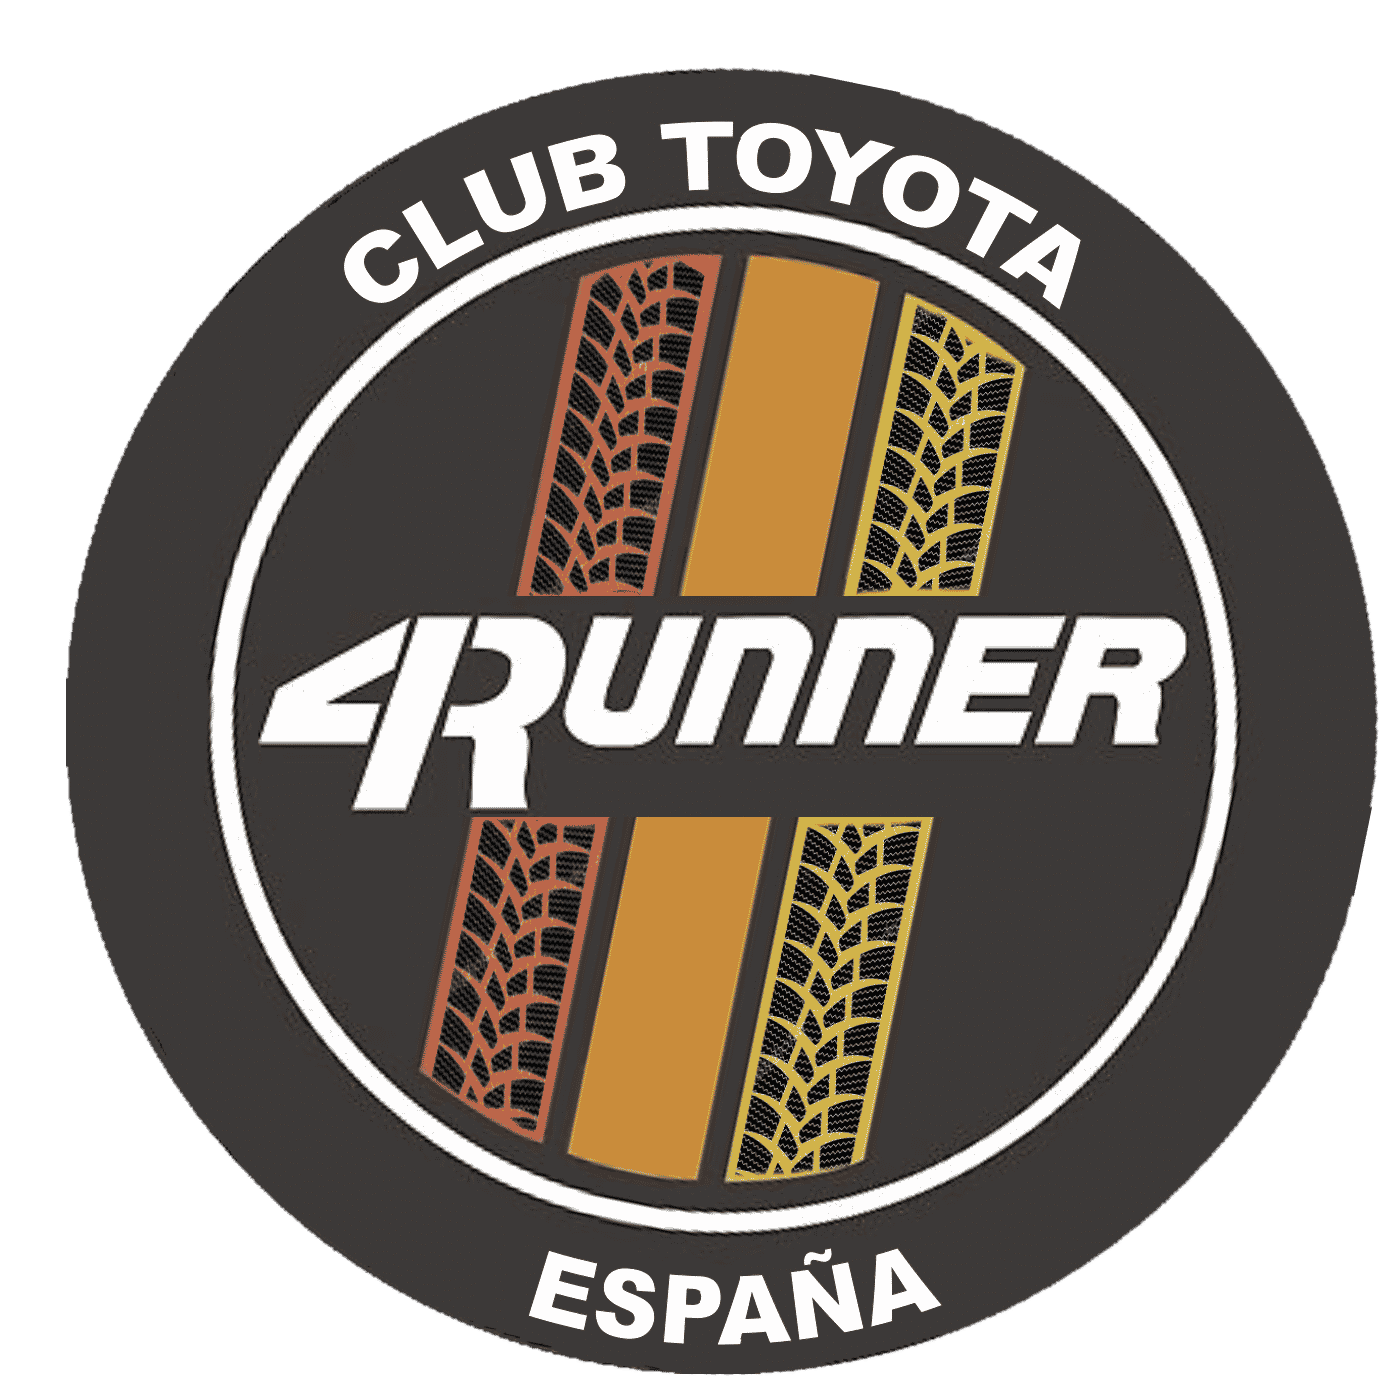 Club Toyota 4Runner España